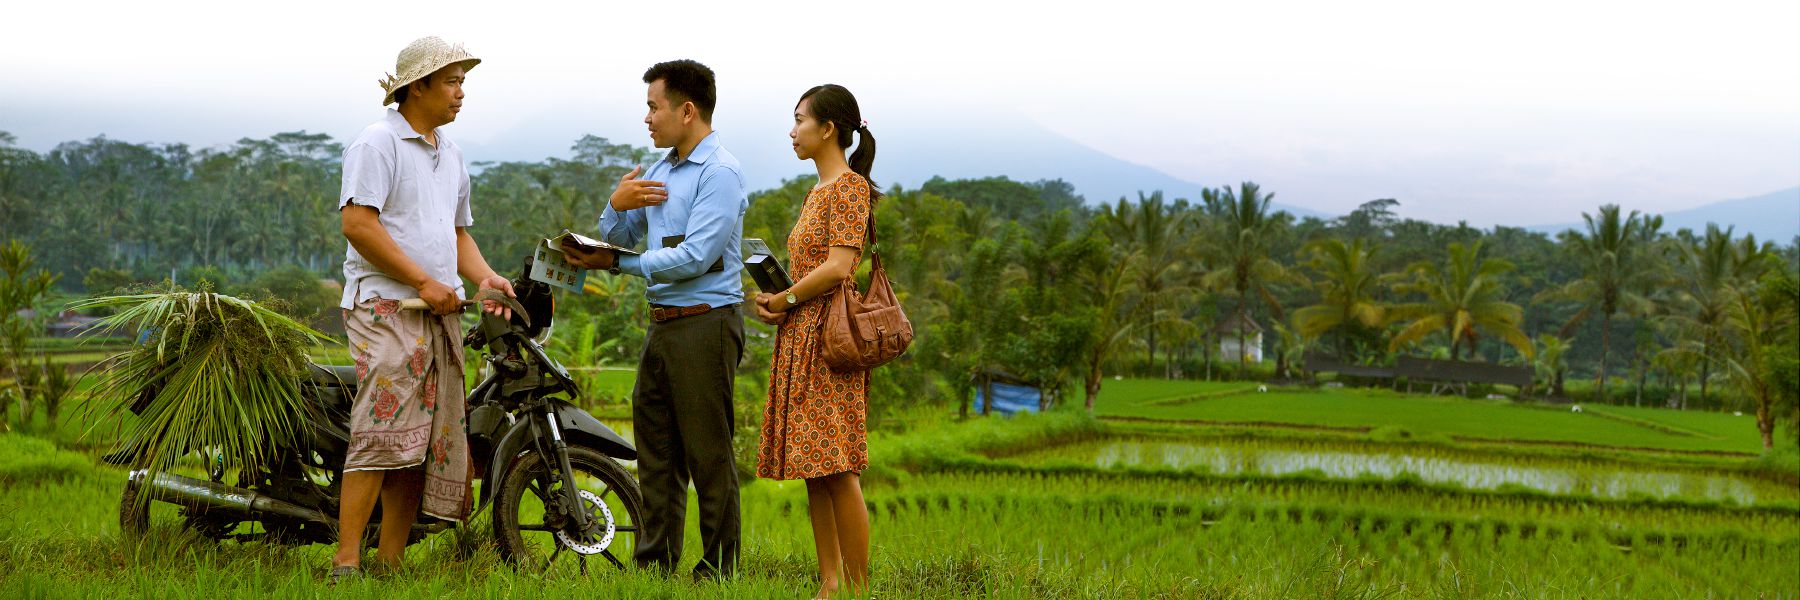 שני עדי־יהוה מבשרים לאדם בשדה אורז